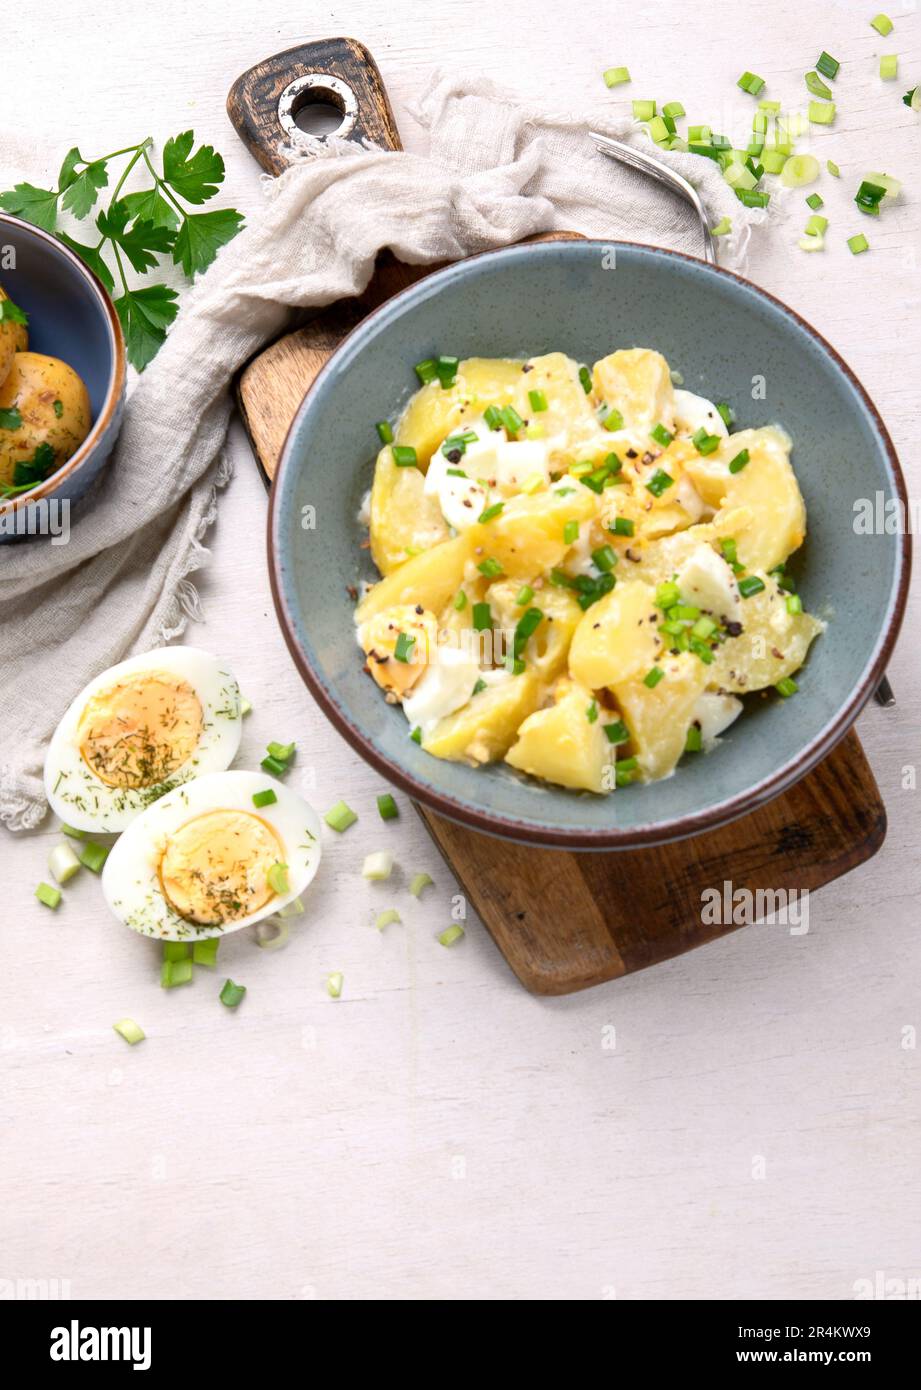 Salat aus Kartoffeln, Eiern, grünen Zwiebeln und Mayonnaise auf einem Teller auf weißem Hintergrund, Draufsicht. Speicherplatz kopieren. Stockfoto